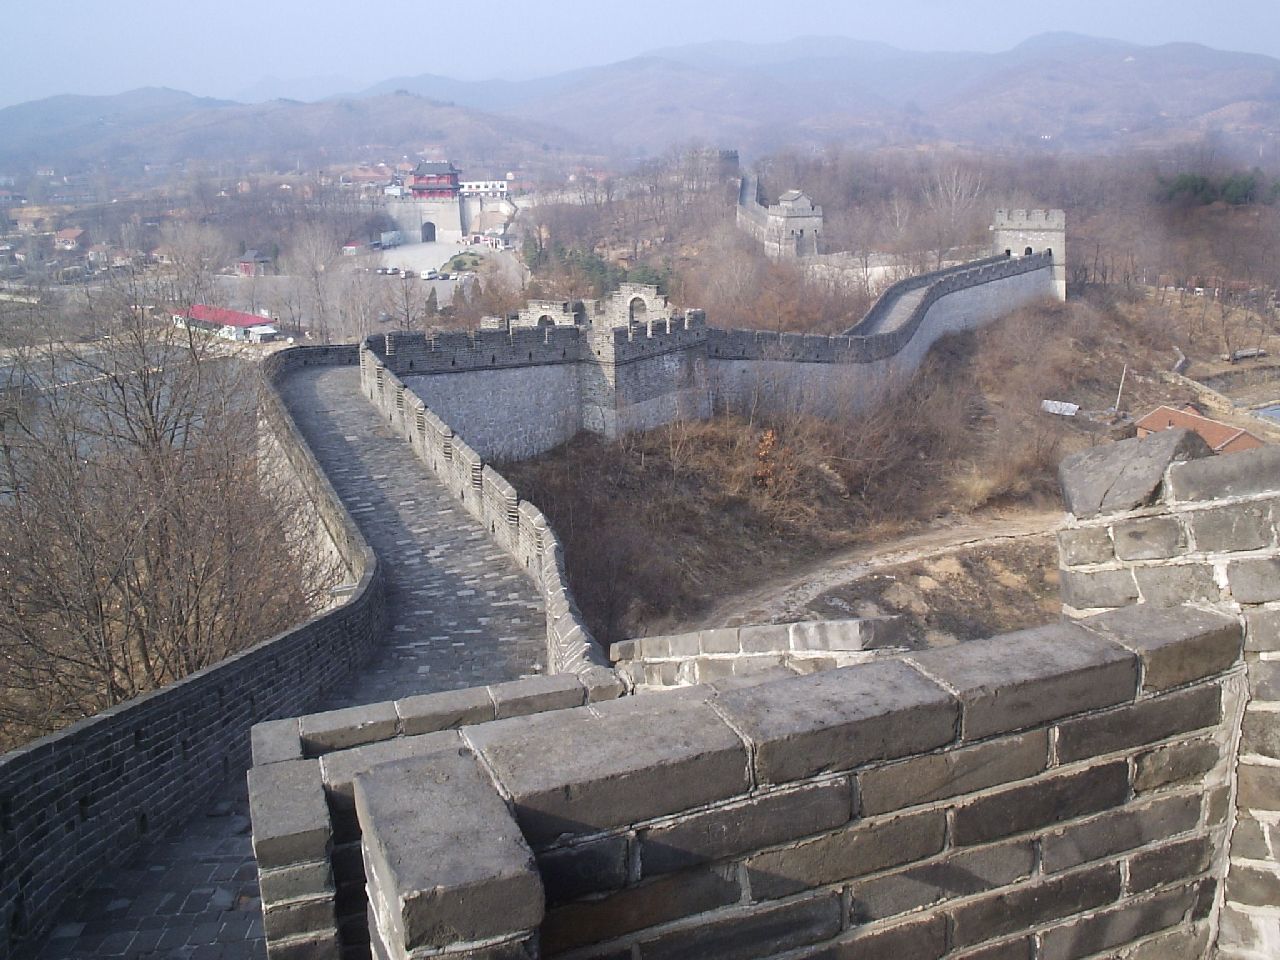 Chiński Mur